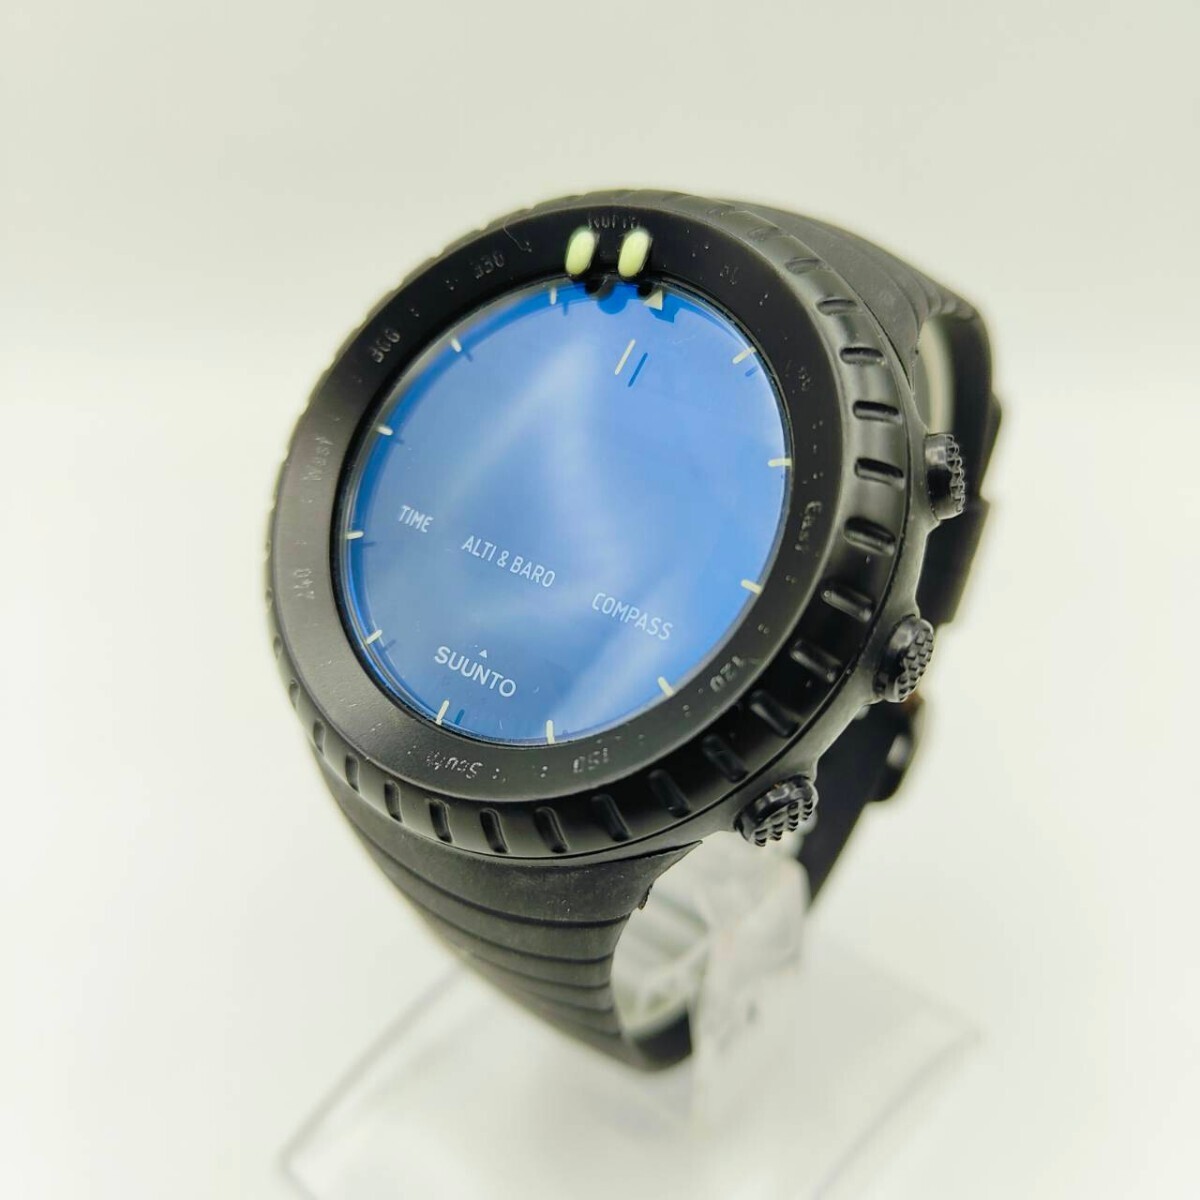 51 SUUNTO CORE メンズ 腕時計 時計 スント コアー オールブラック CR 2032 デジタル ラバーベルト SCの画像1